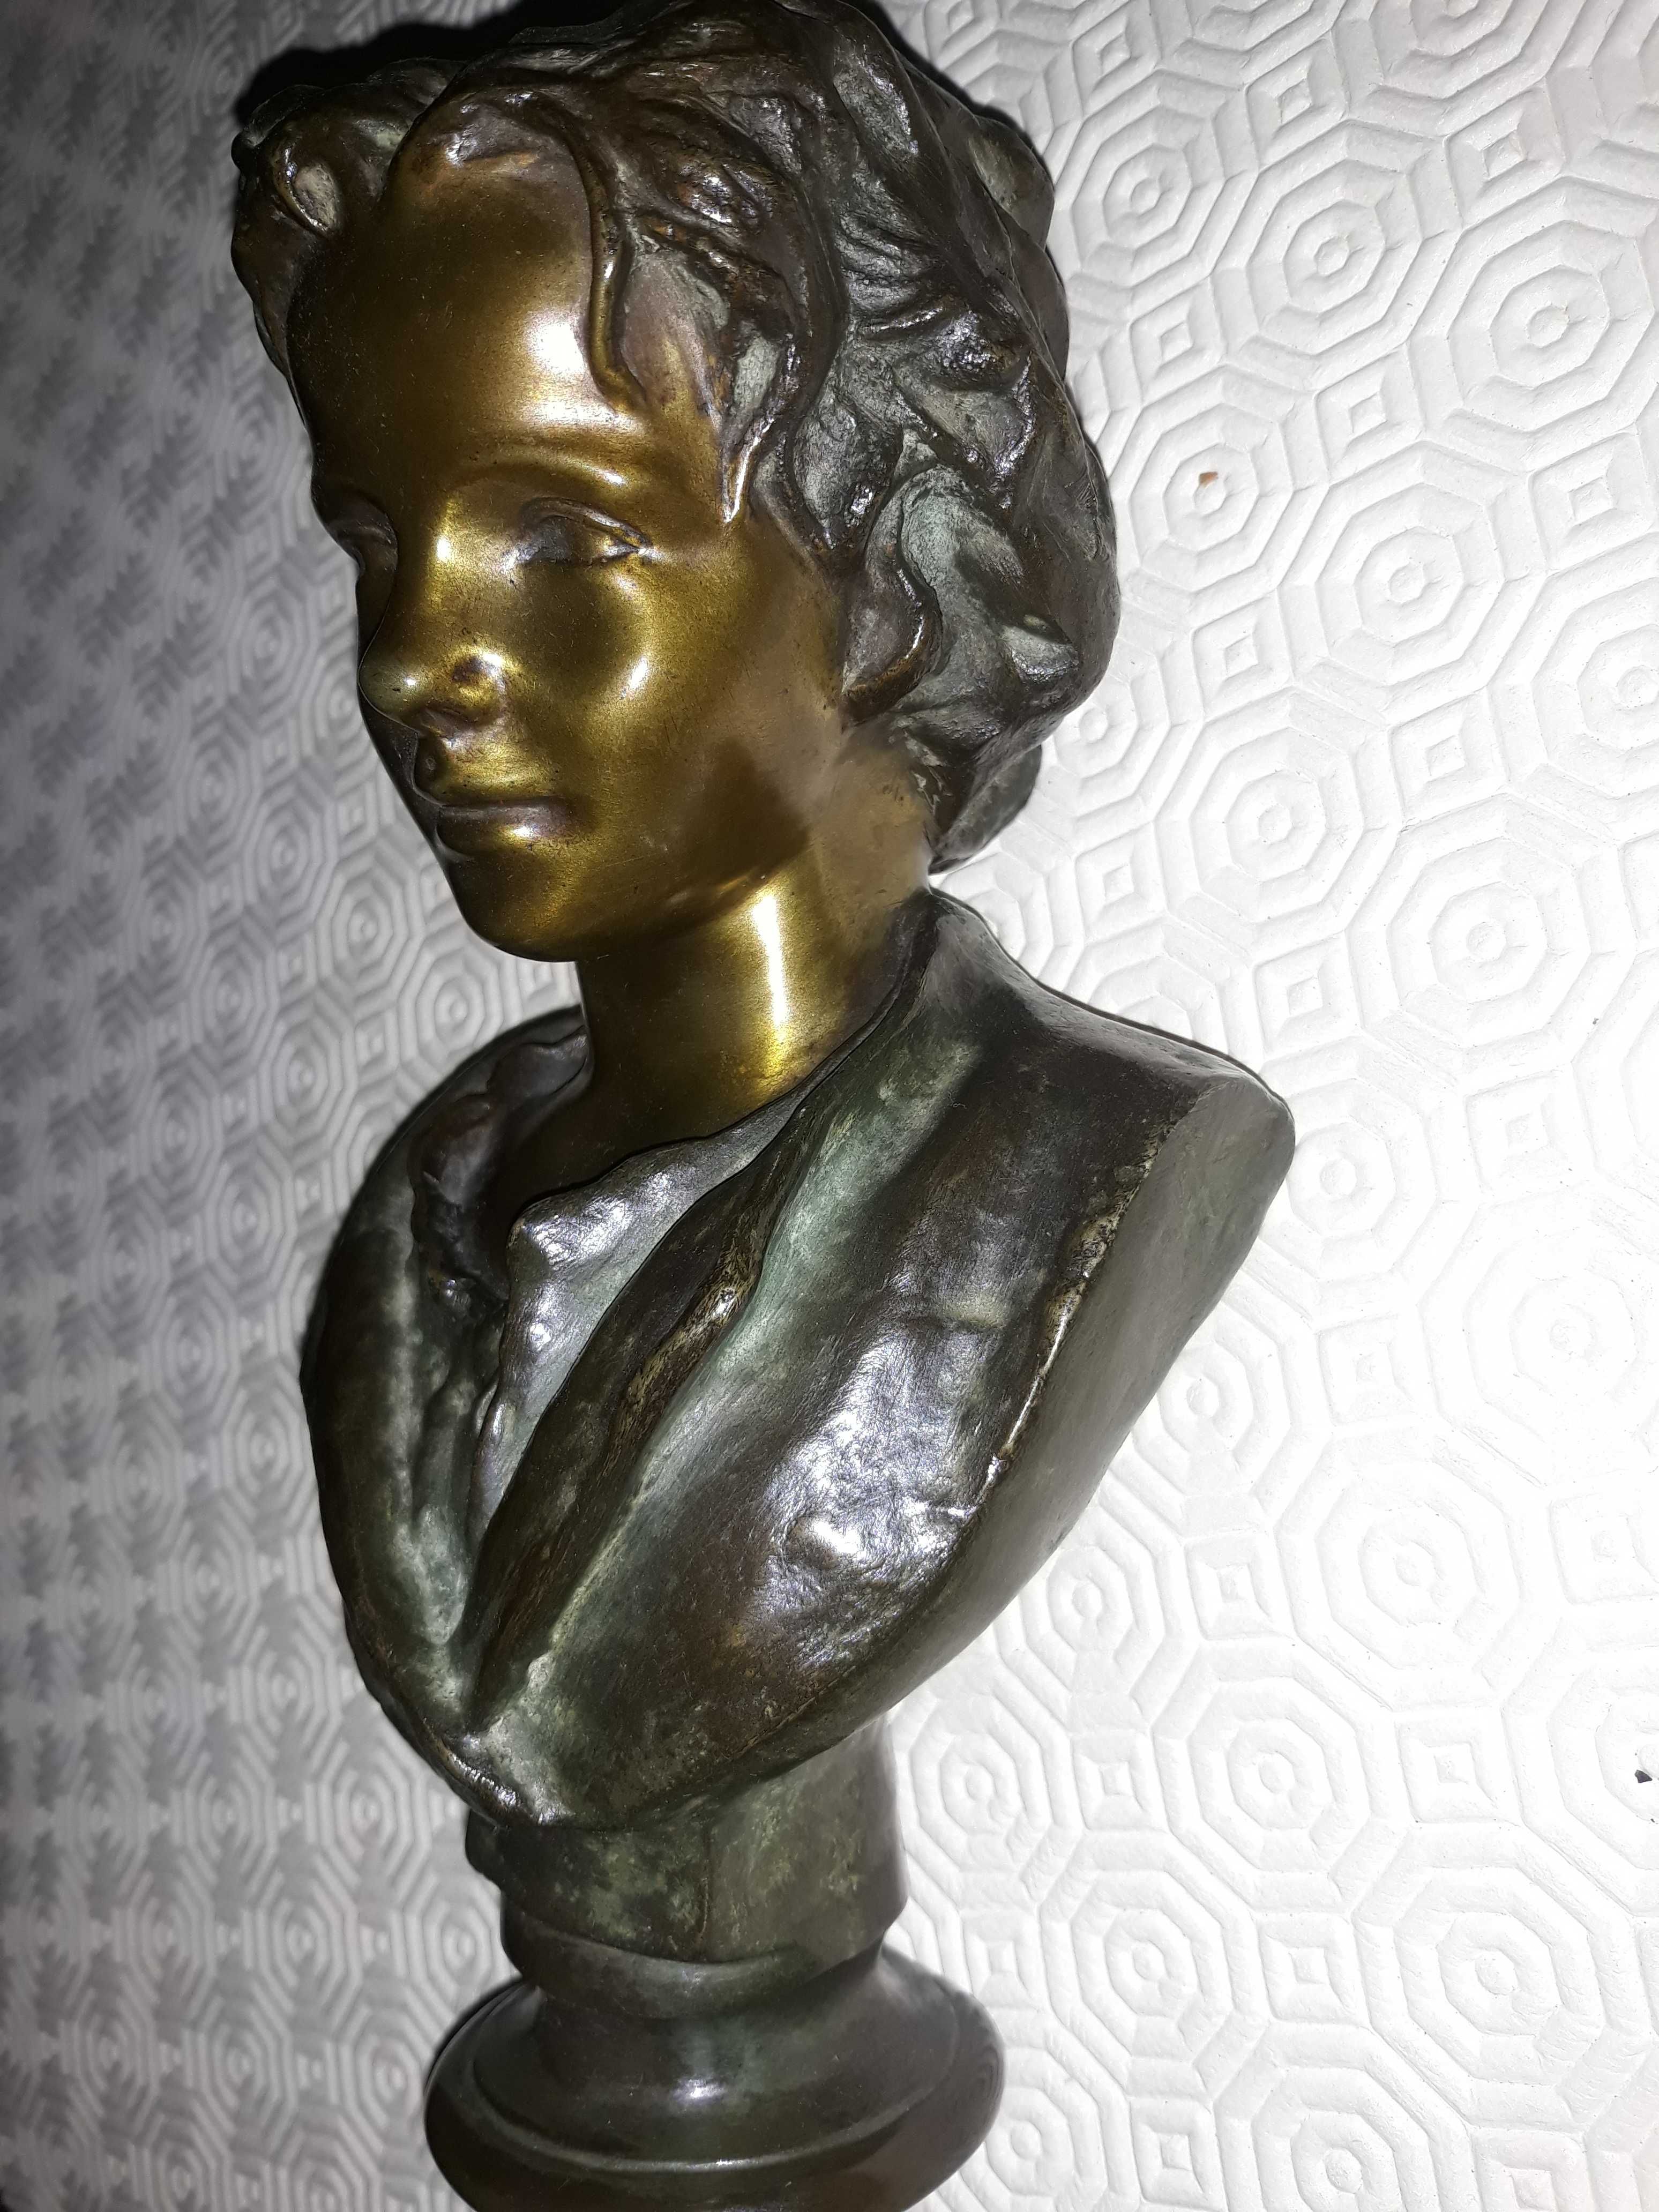 Estatueta "Flor Agreste" - Busto em Bronze Soares dos Reis